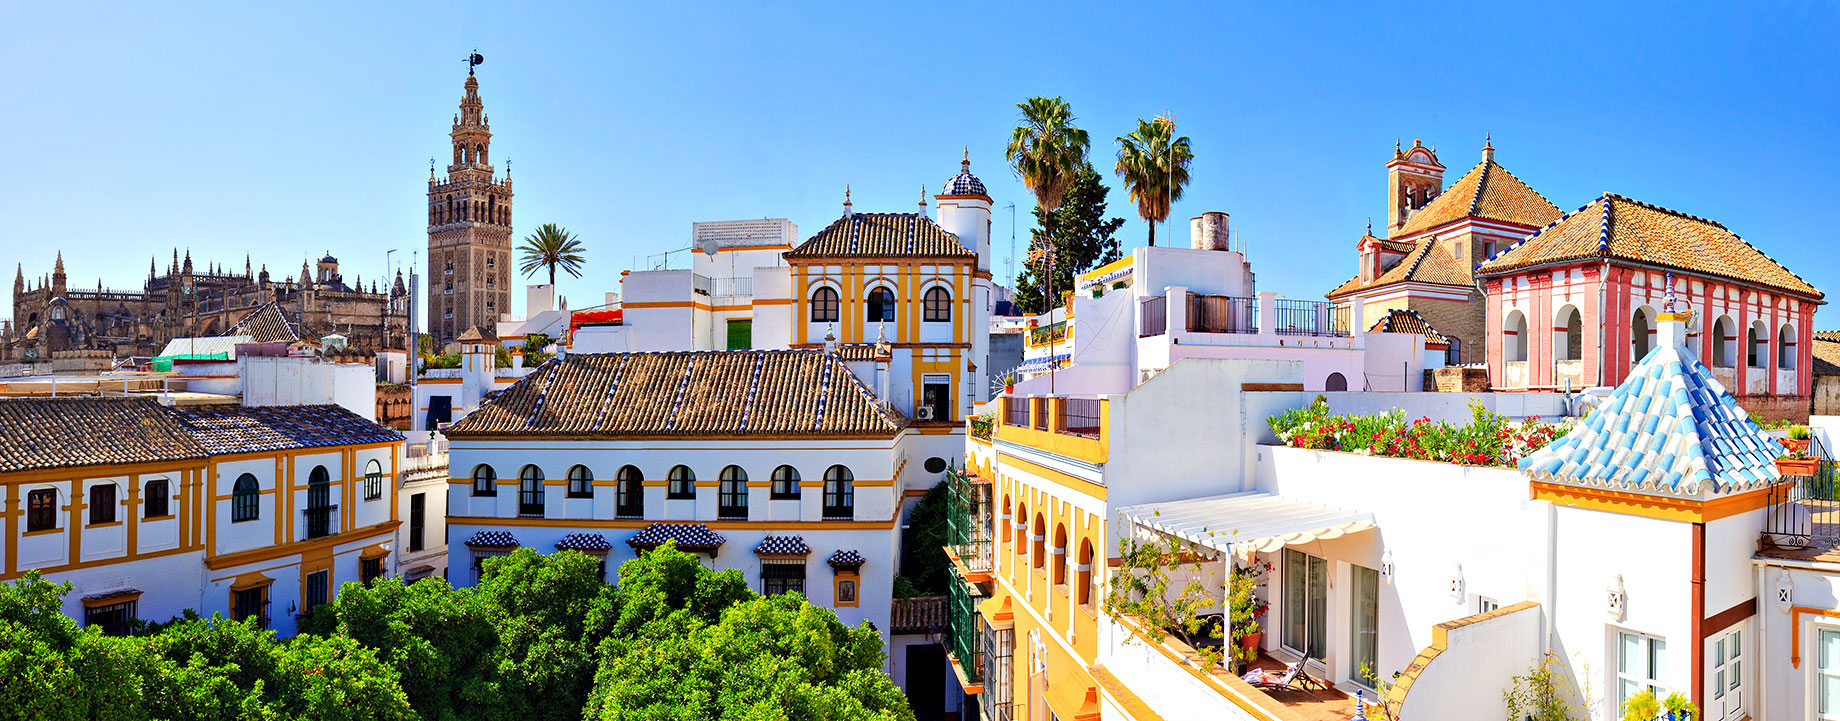 Santa Cruz, Seville, Andalusia, Spain